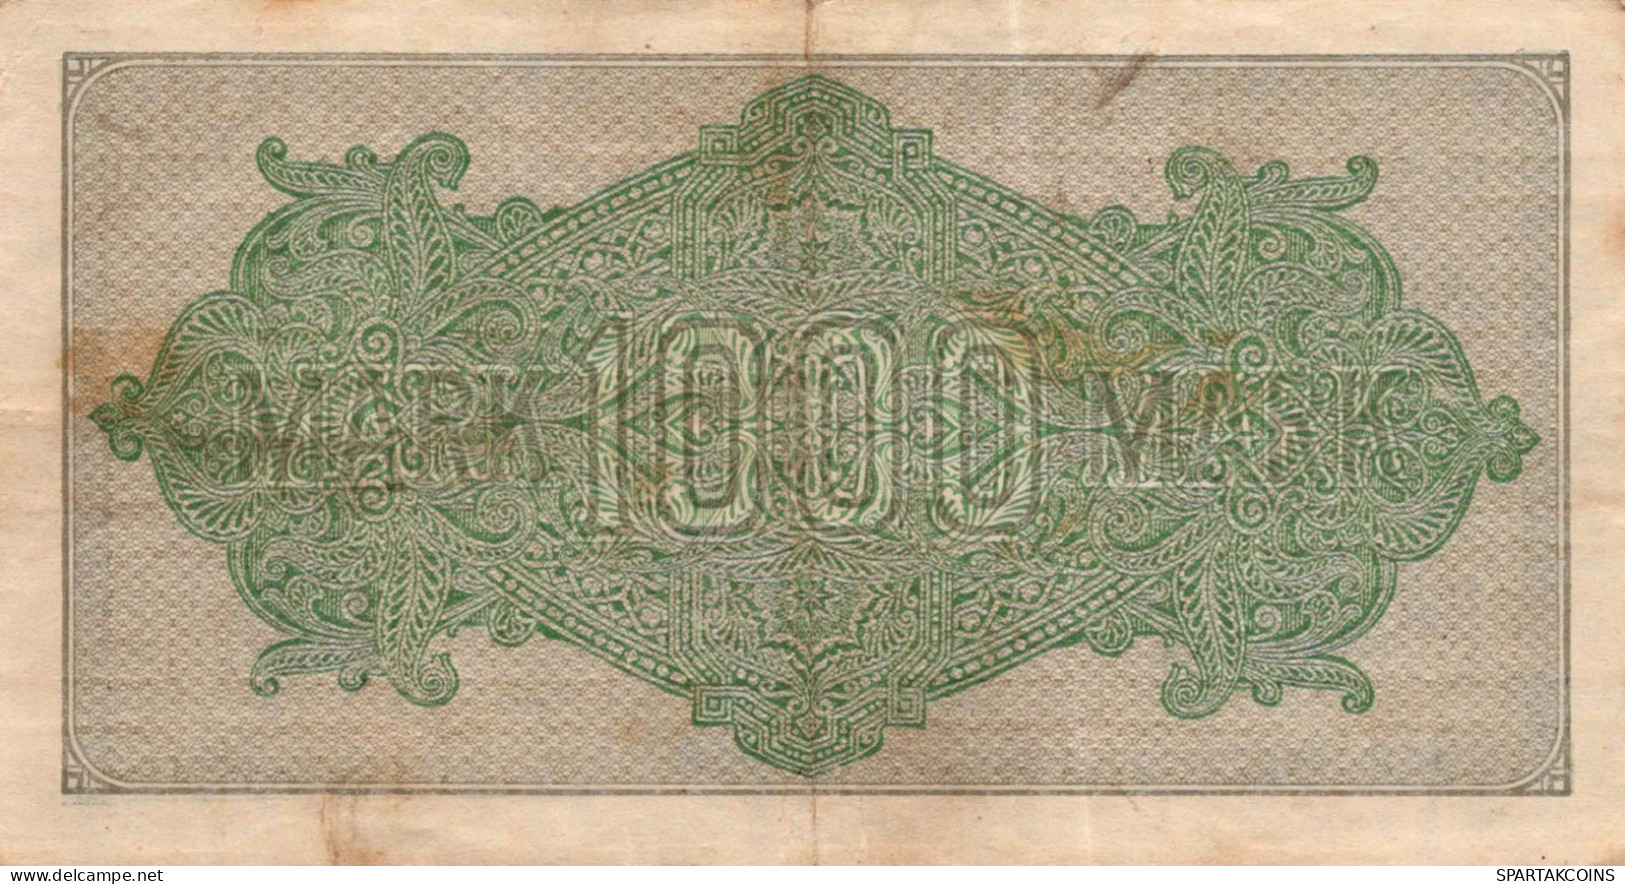 1000 MARK 1922 Stadt BERLIN DEUTSCHLAND Papiergeld Banknote #PL387 - [11] Emisiones Locales